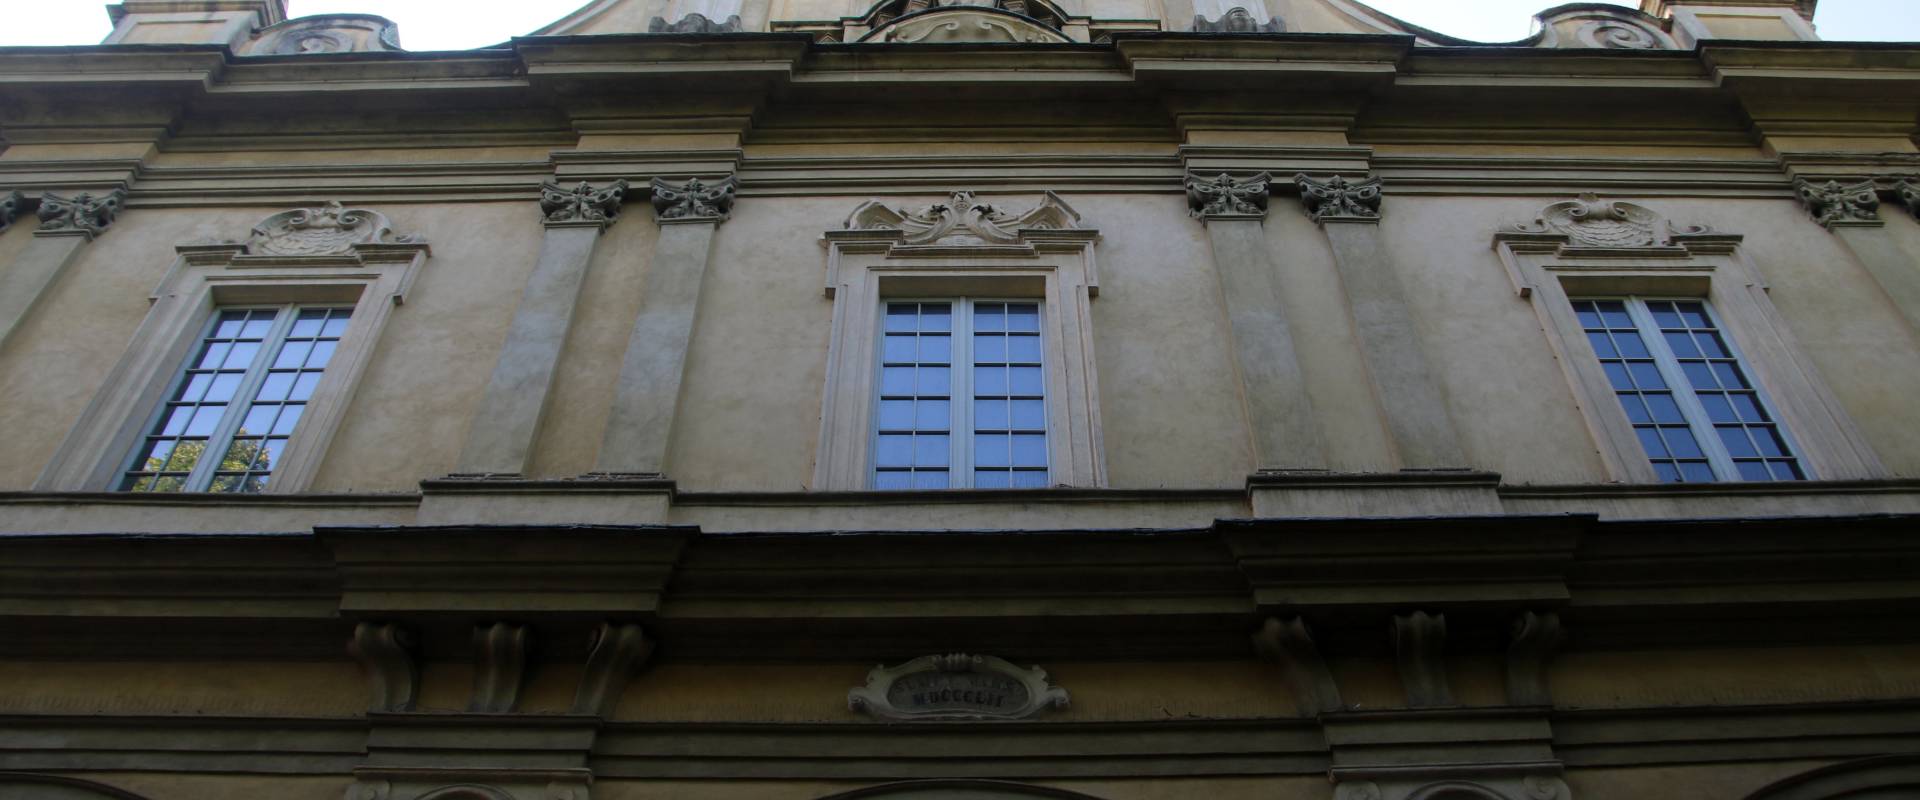 Basilica di San Savino (Piacenza), facciata 08 foto di Mongolo1984